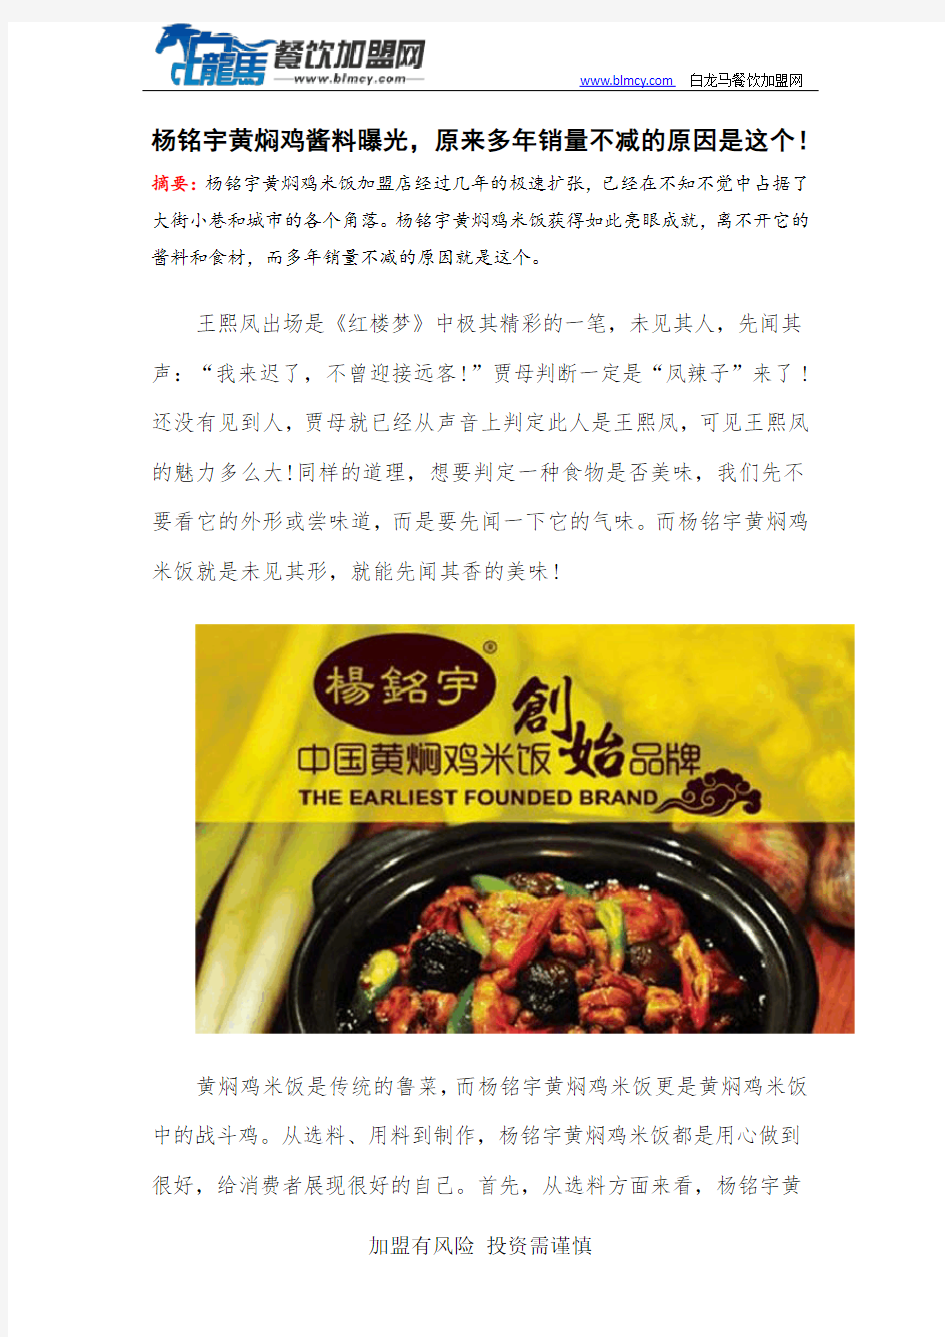 杨铭宇黄焖鸡酱料曝光,原来多年销量不减的原因是这个!